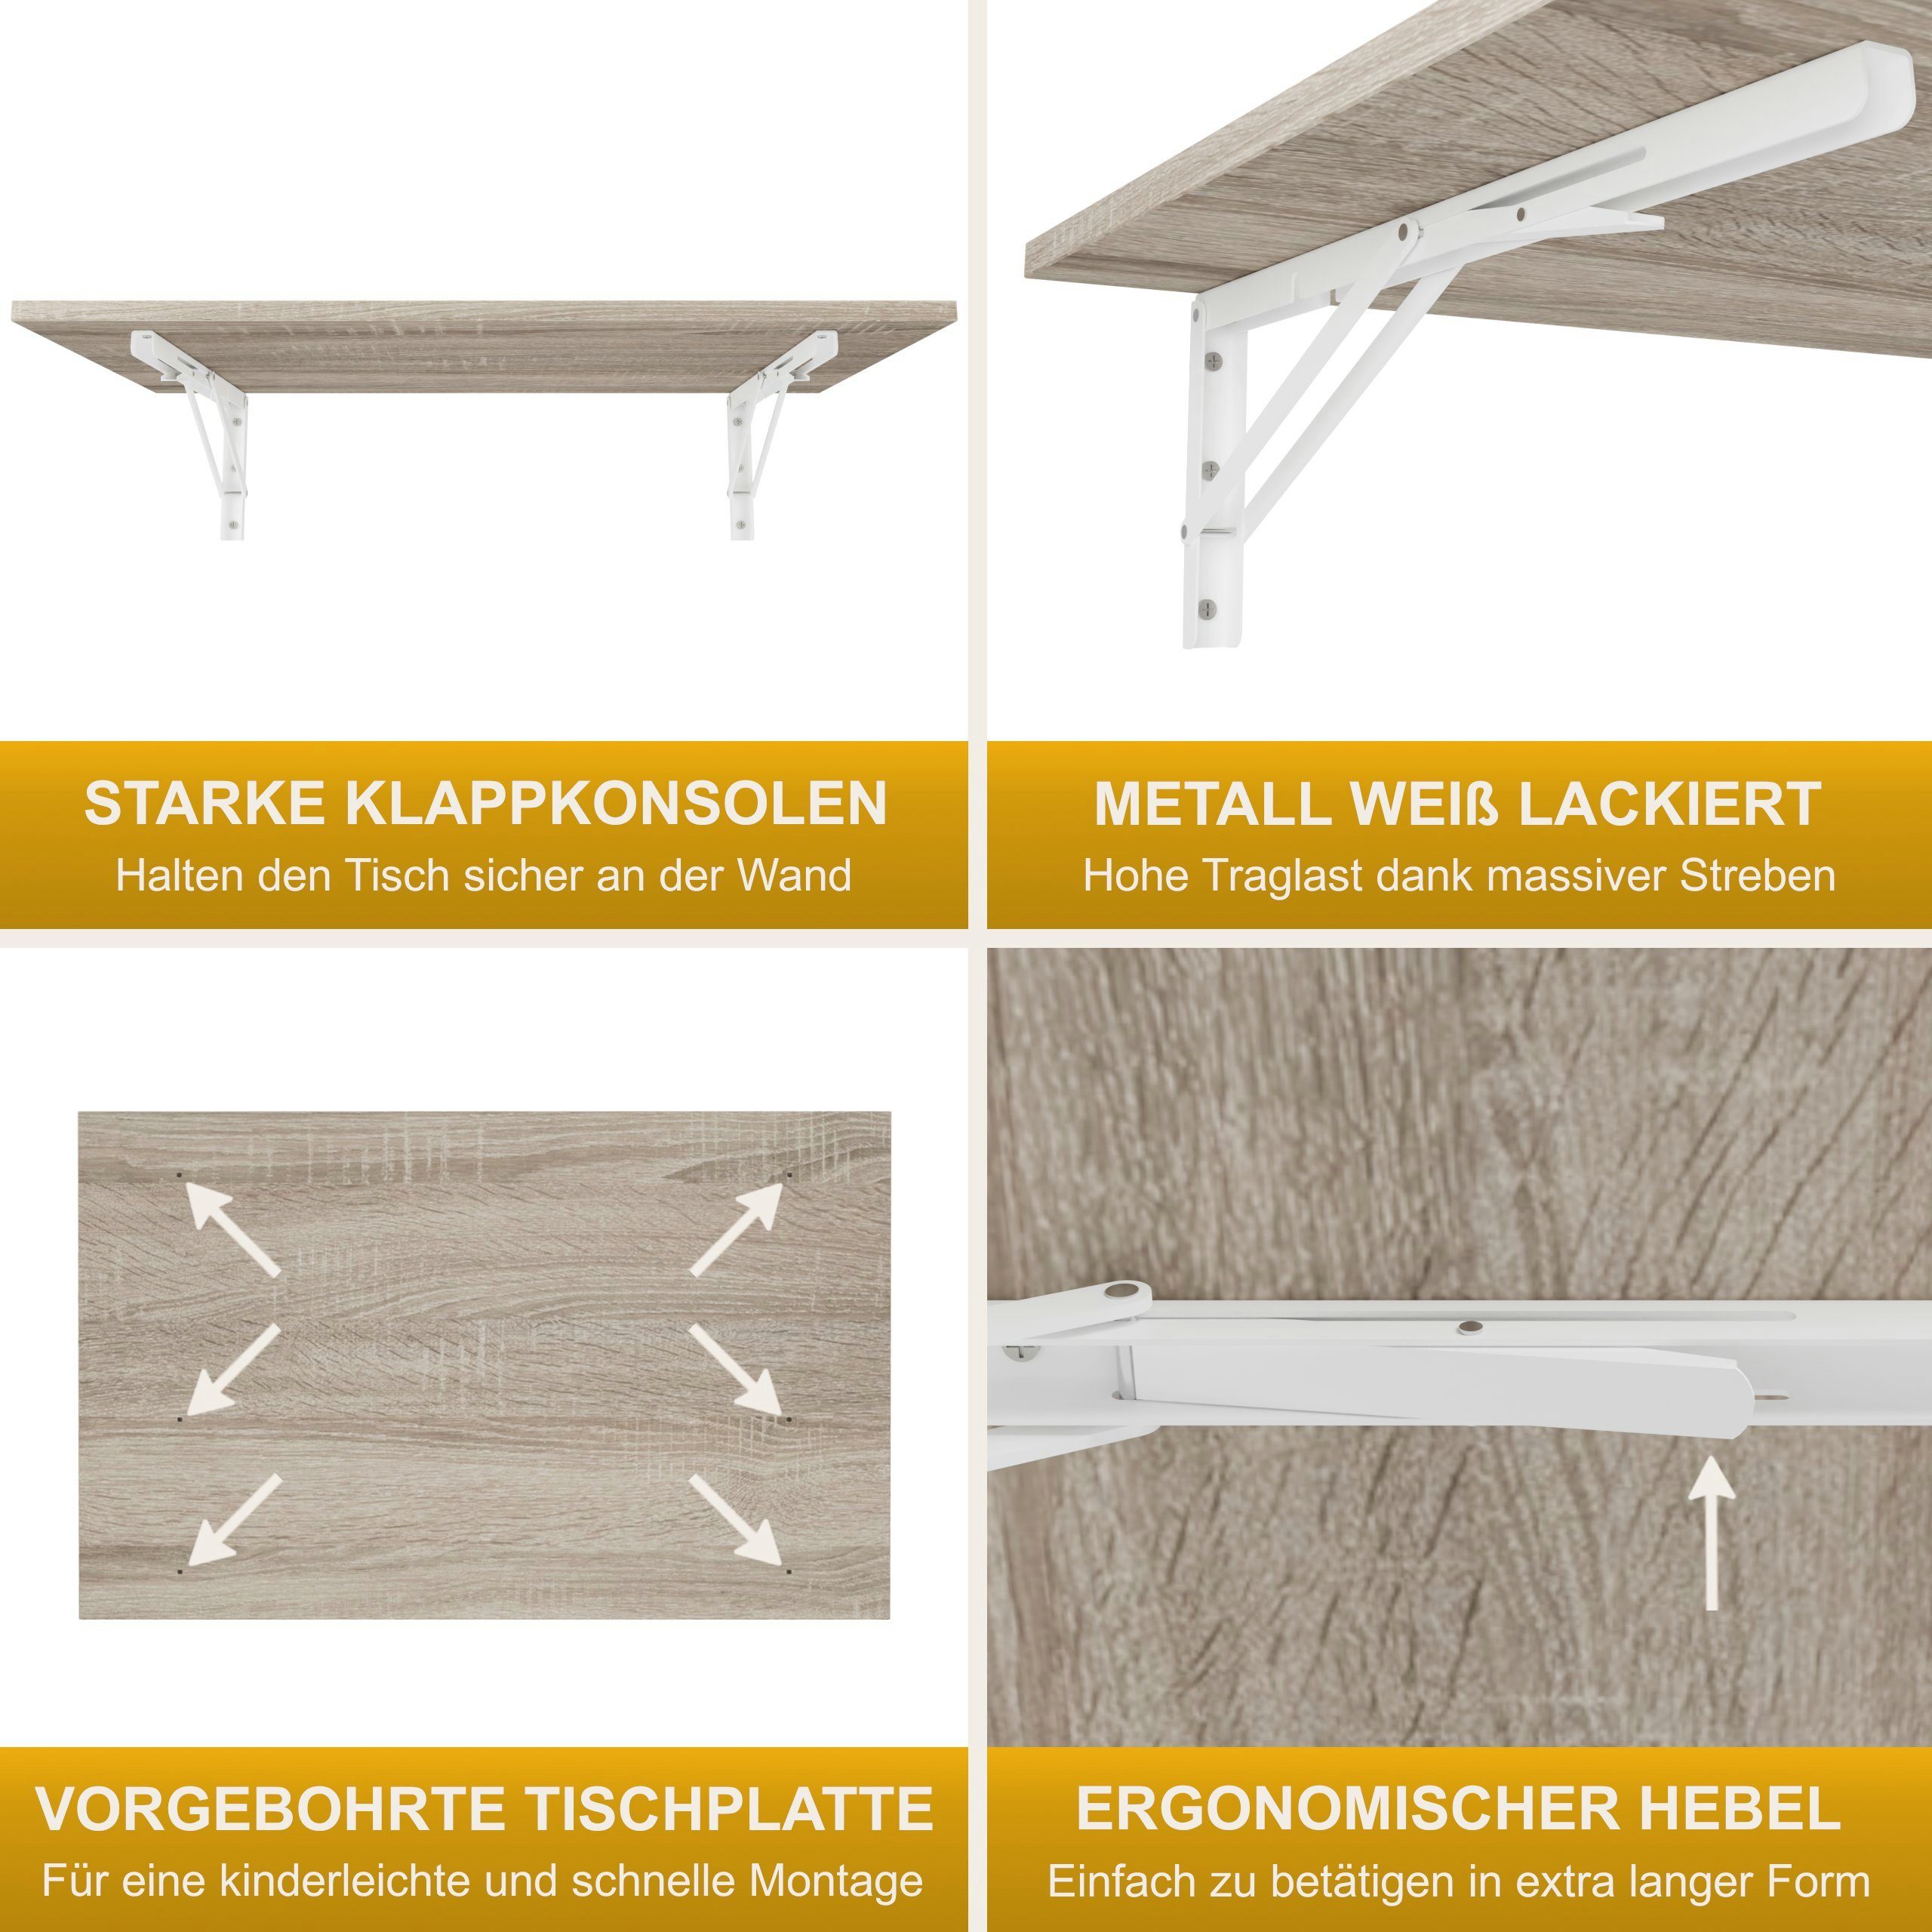 Sonoma Eiche Klapptisch Produktgestaltung Wandklapptisch Tisch, Küchentisch 80x50 Wand Esstisch Schreibtisch KDR